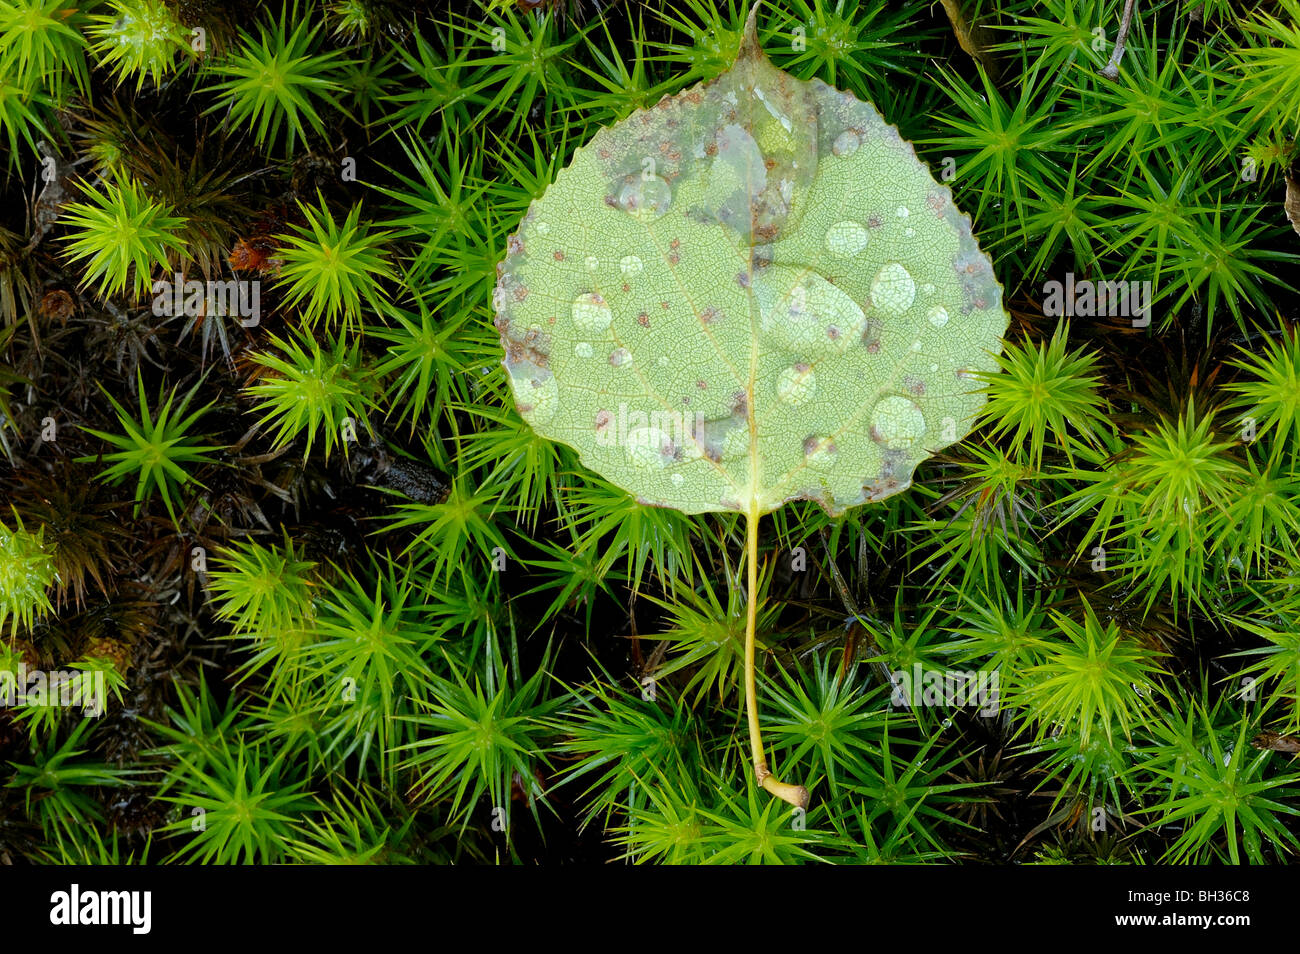 Gotas de agua se aferran a caído aspen leaf en lecho de musgo, mayor en Sudbury, Ontario, Canadá Foto de stock